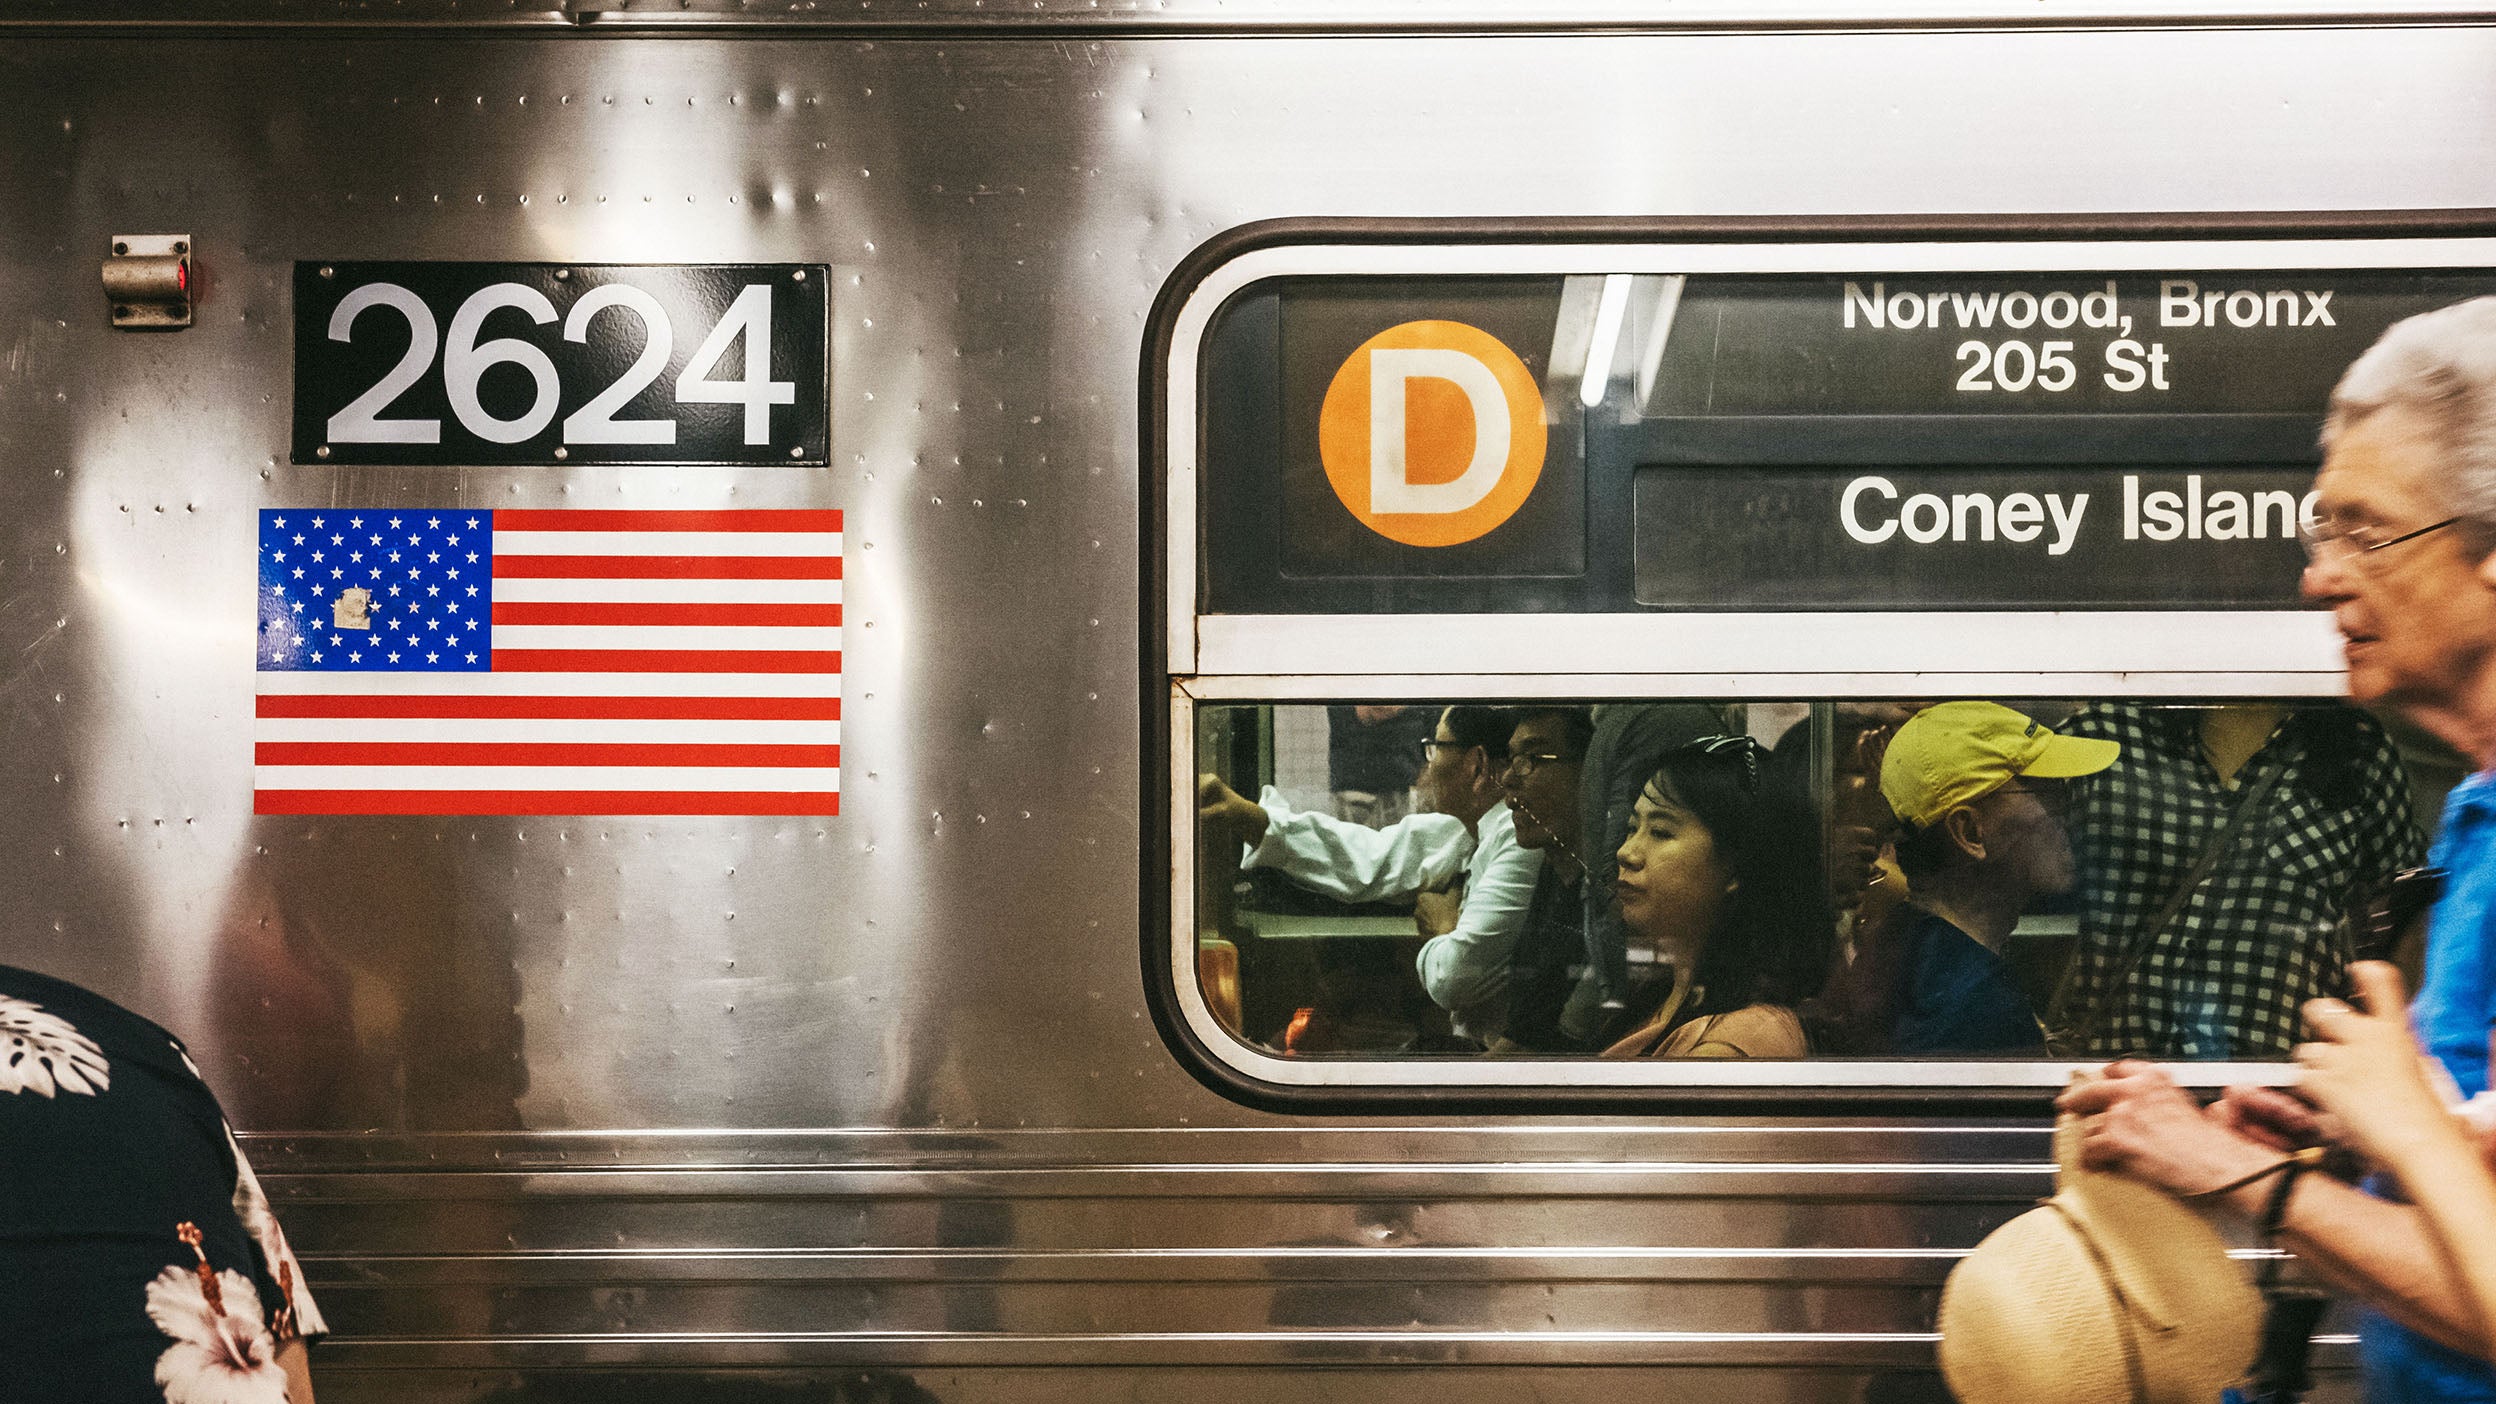 Annonce du train de la ligne D à destination de Coney Island à New York aux États-Unis